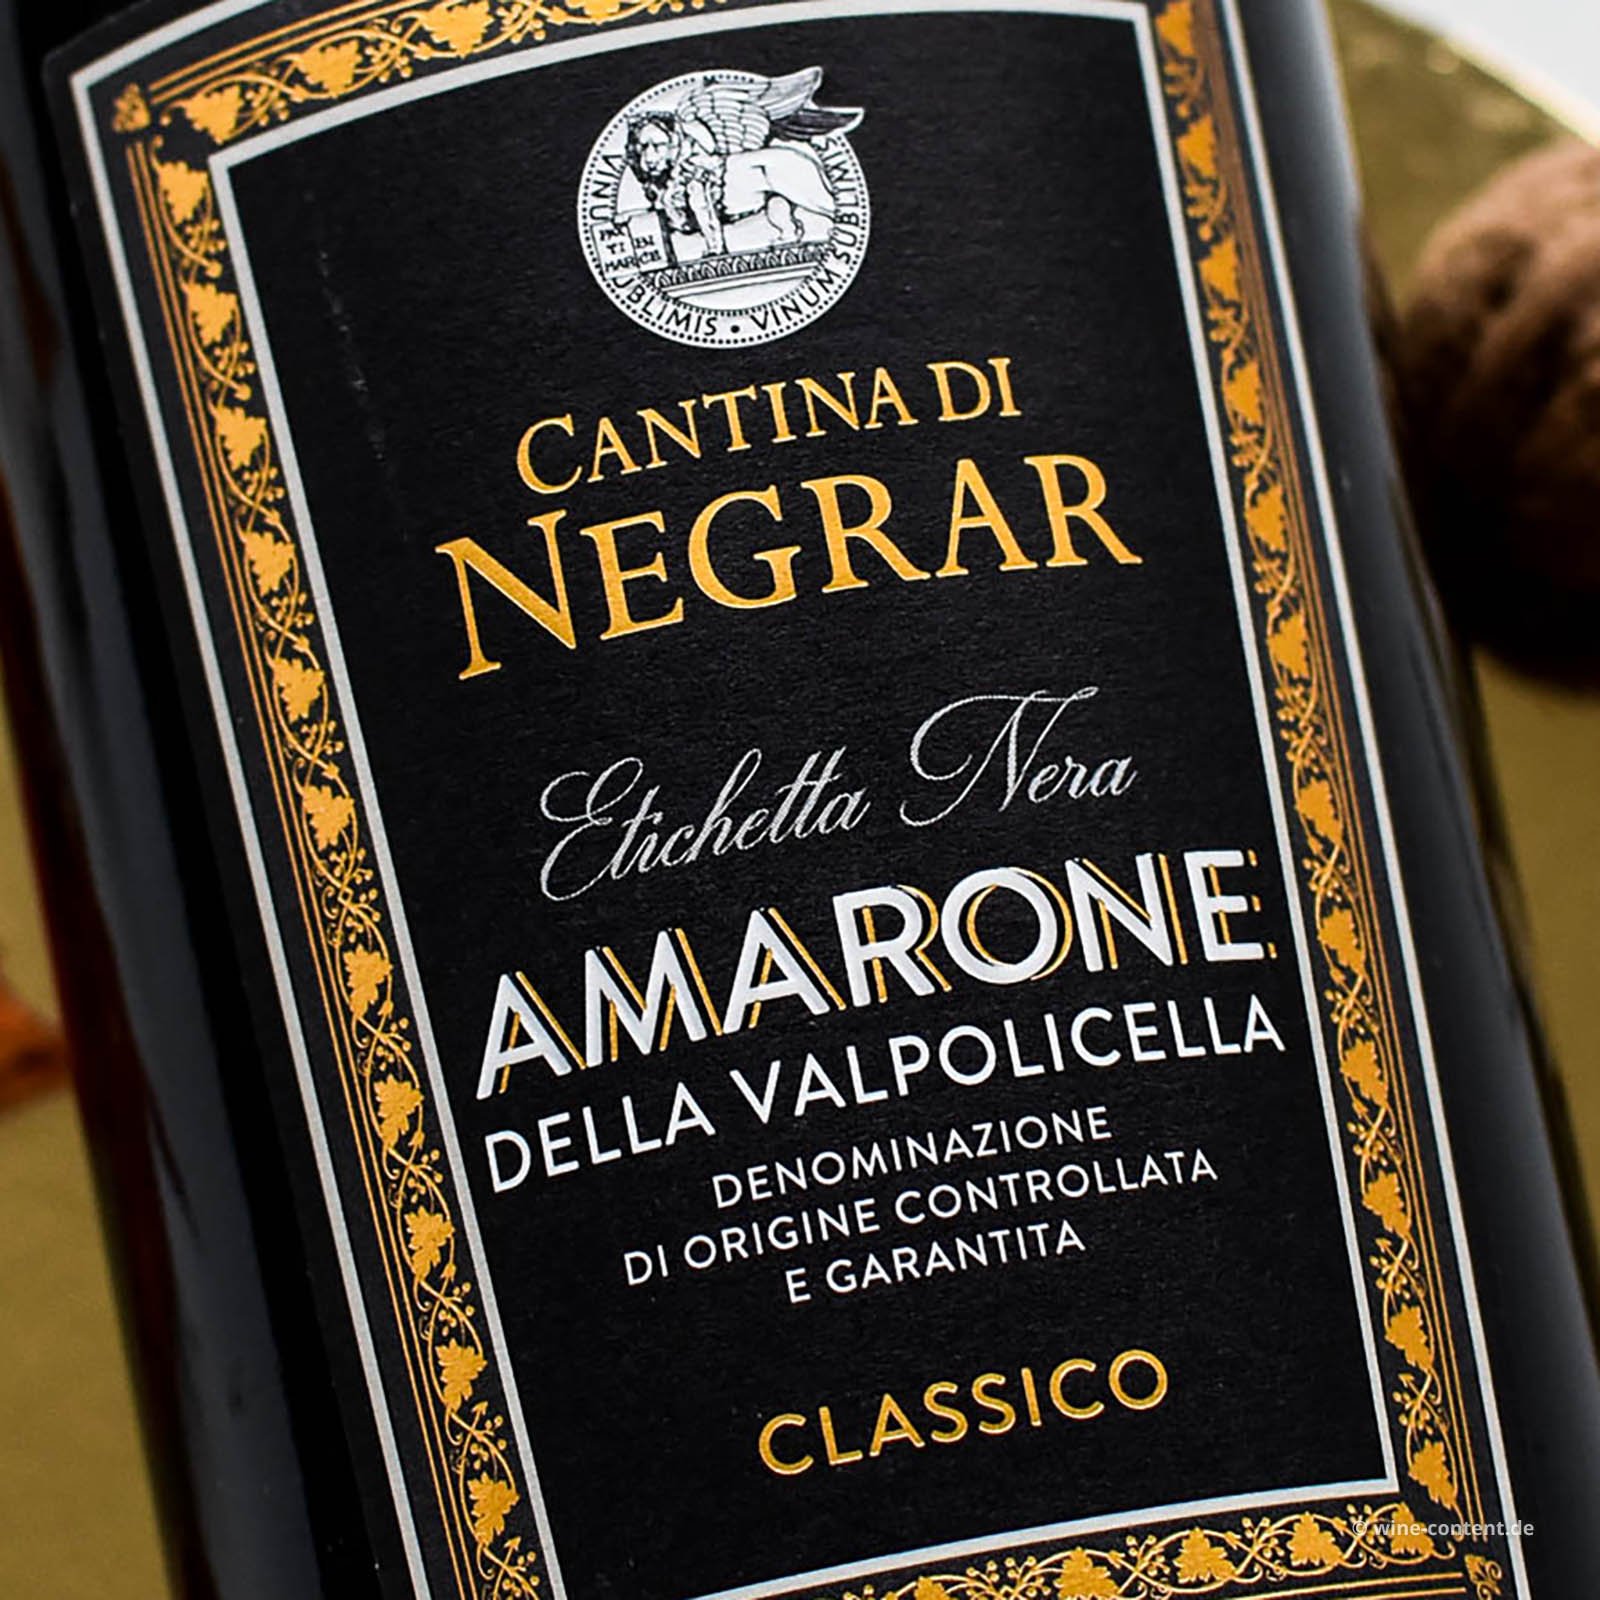 Amarone Classico 2017 Etichetta Nera